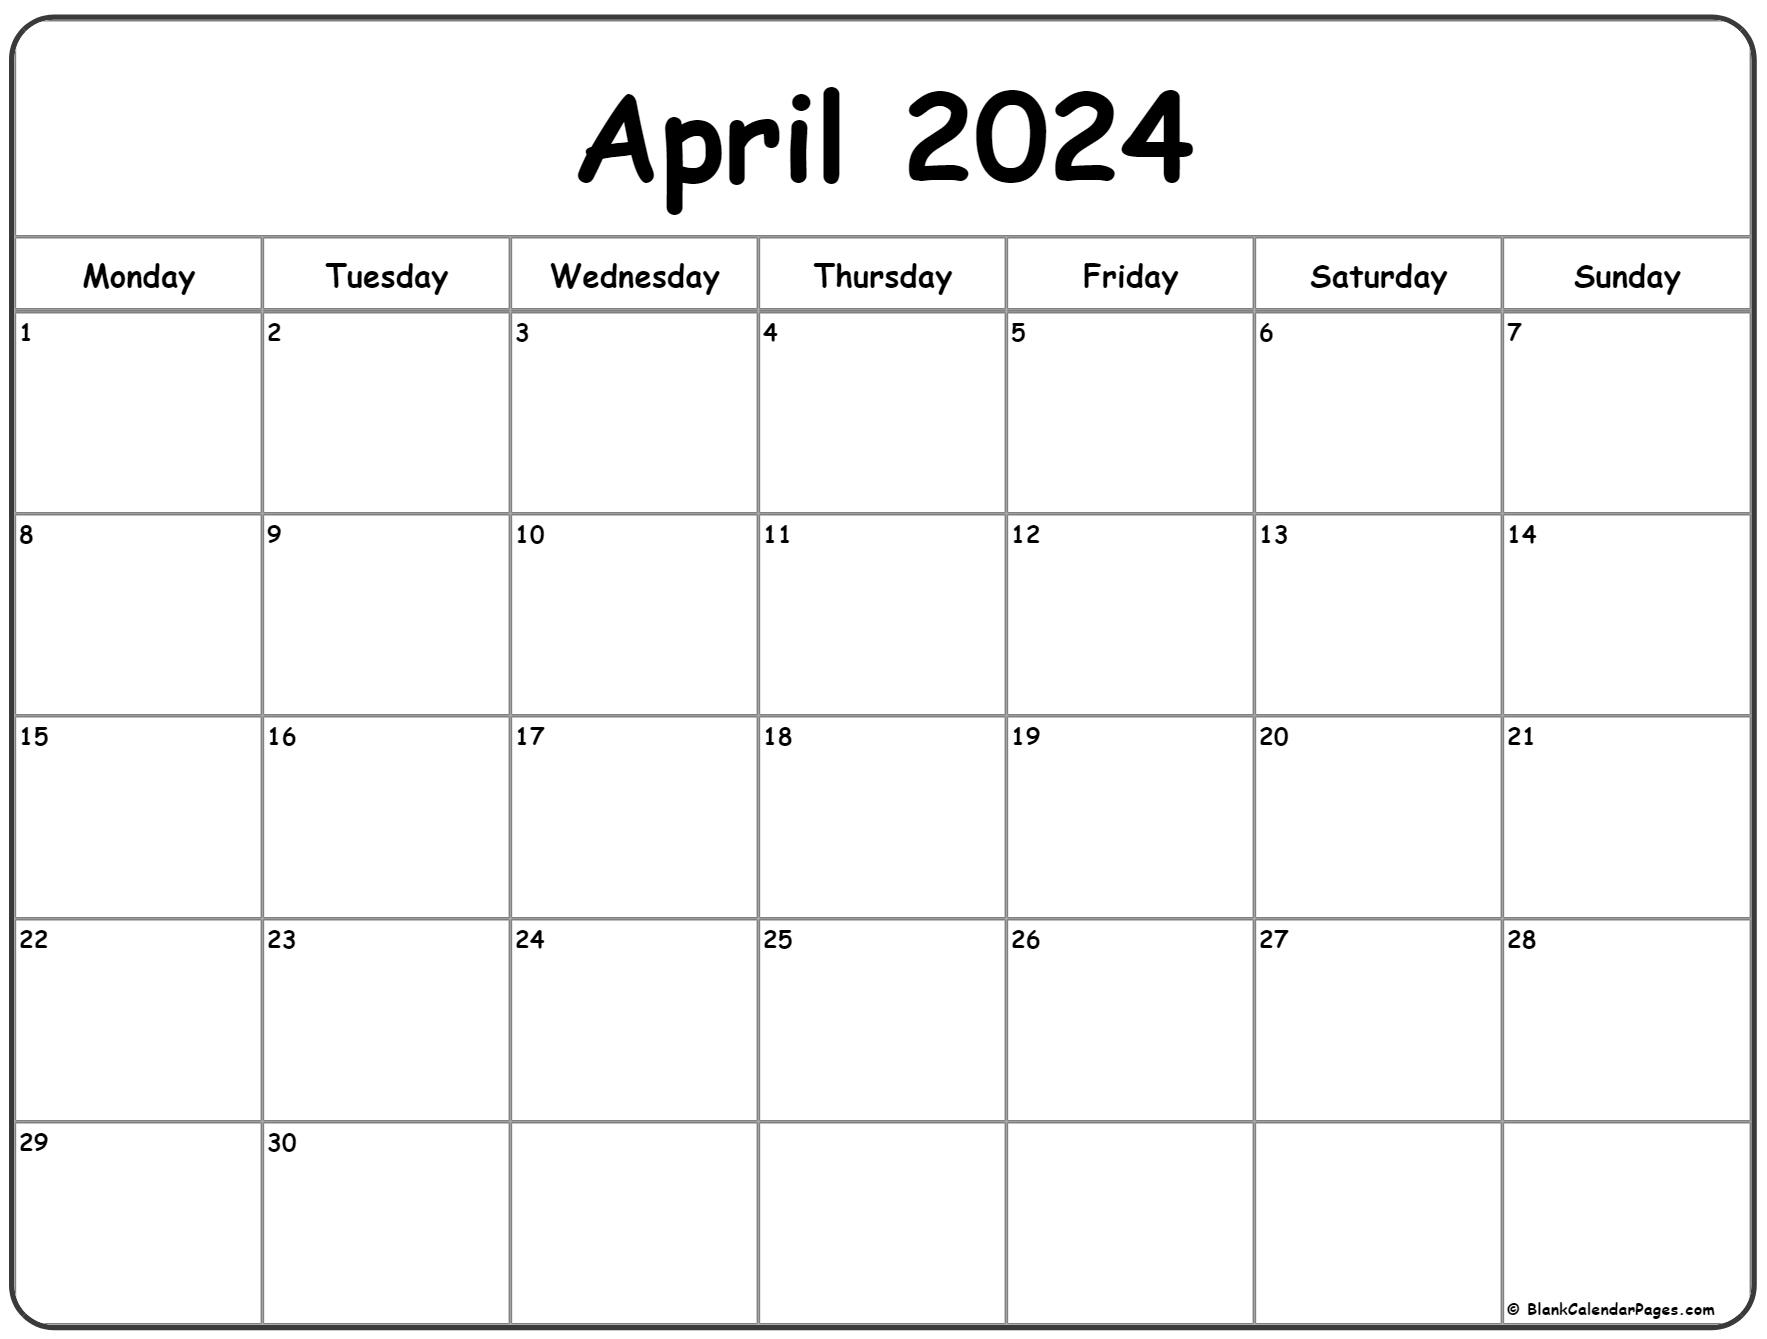 April 2024 Monday Calendar | Monday To Sunday for April Printable Calendar 2024